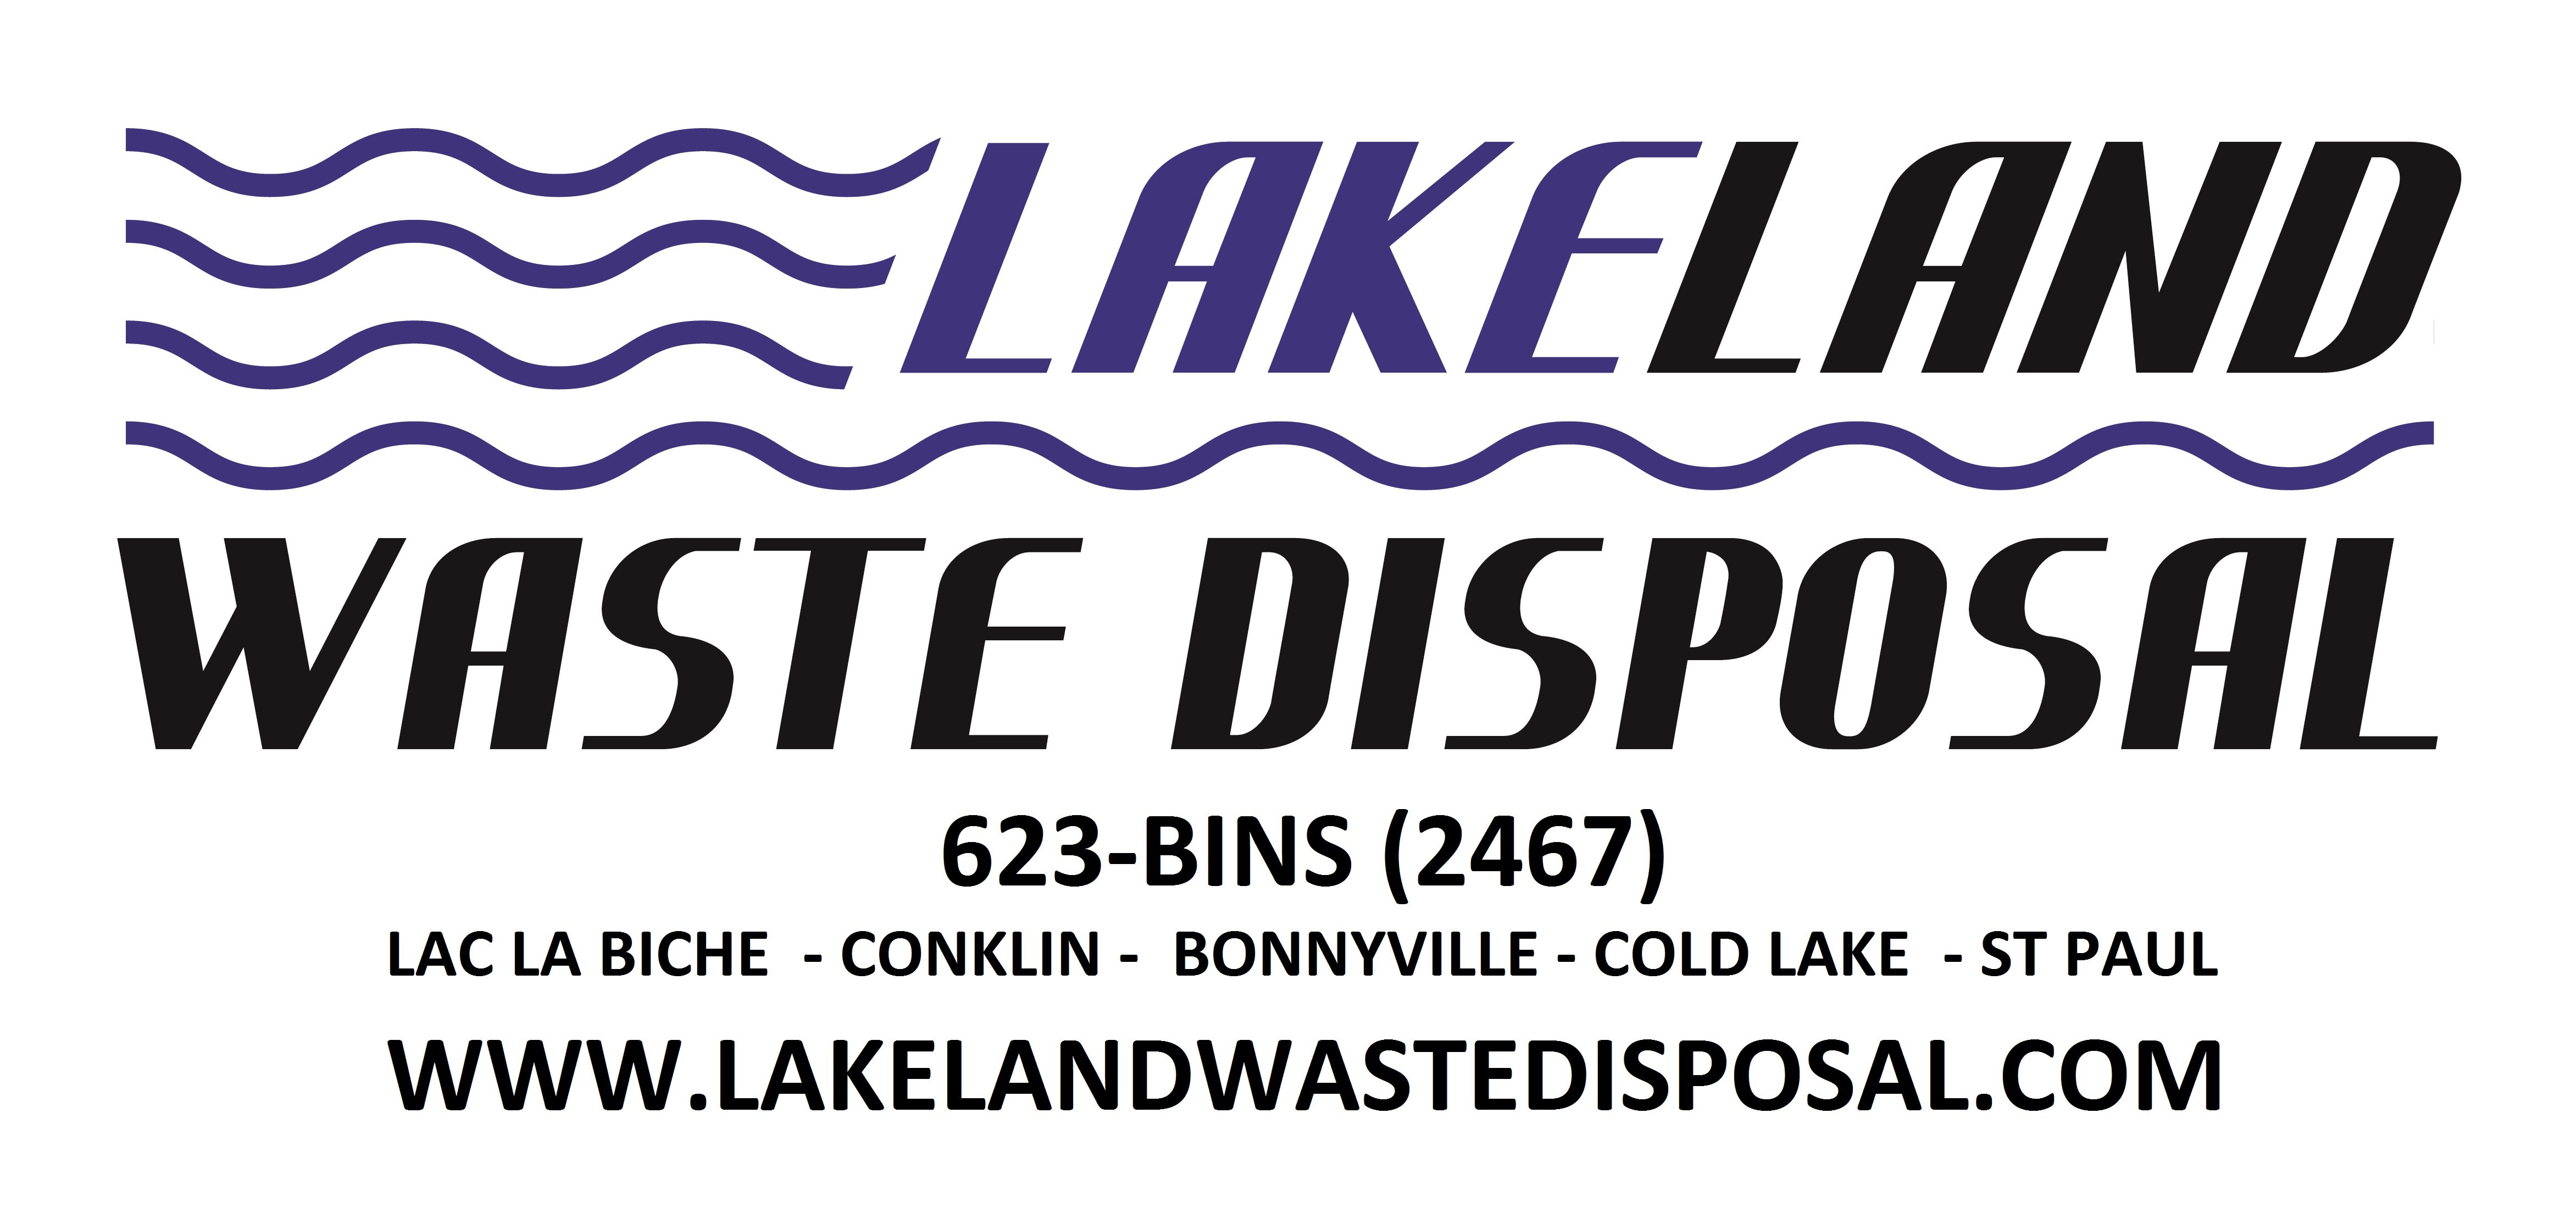 Lakeland Waste Disposal